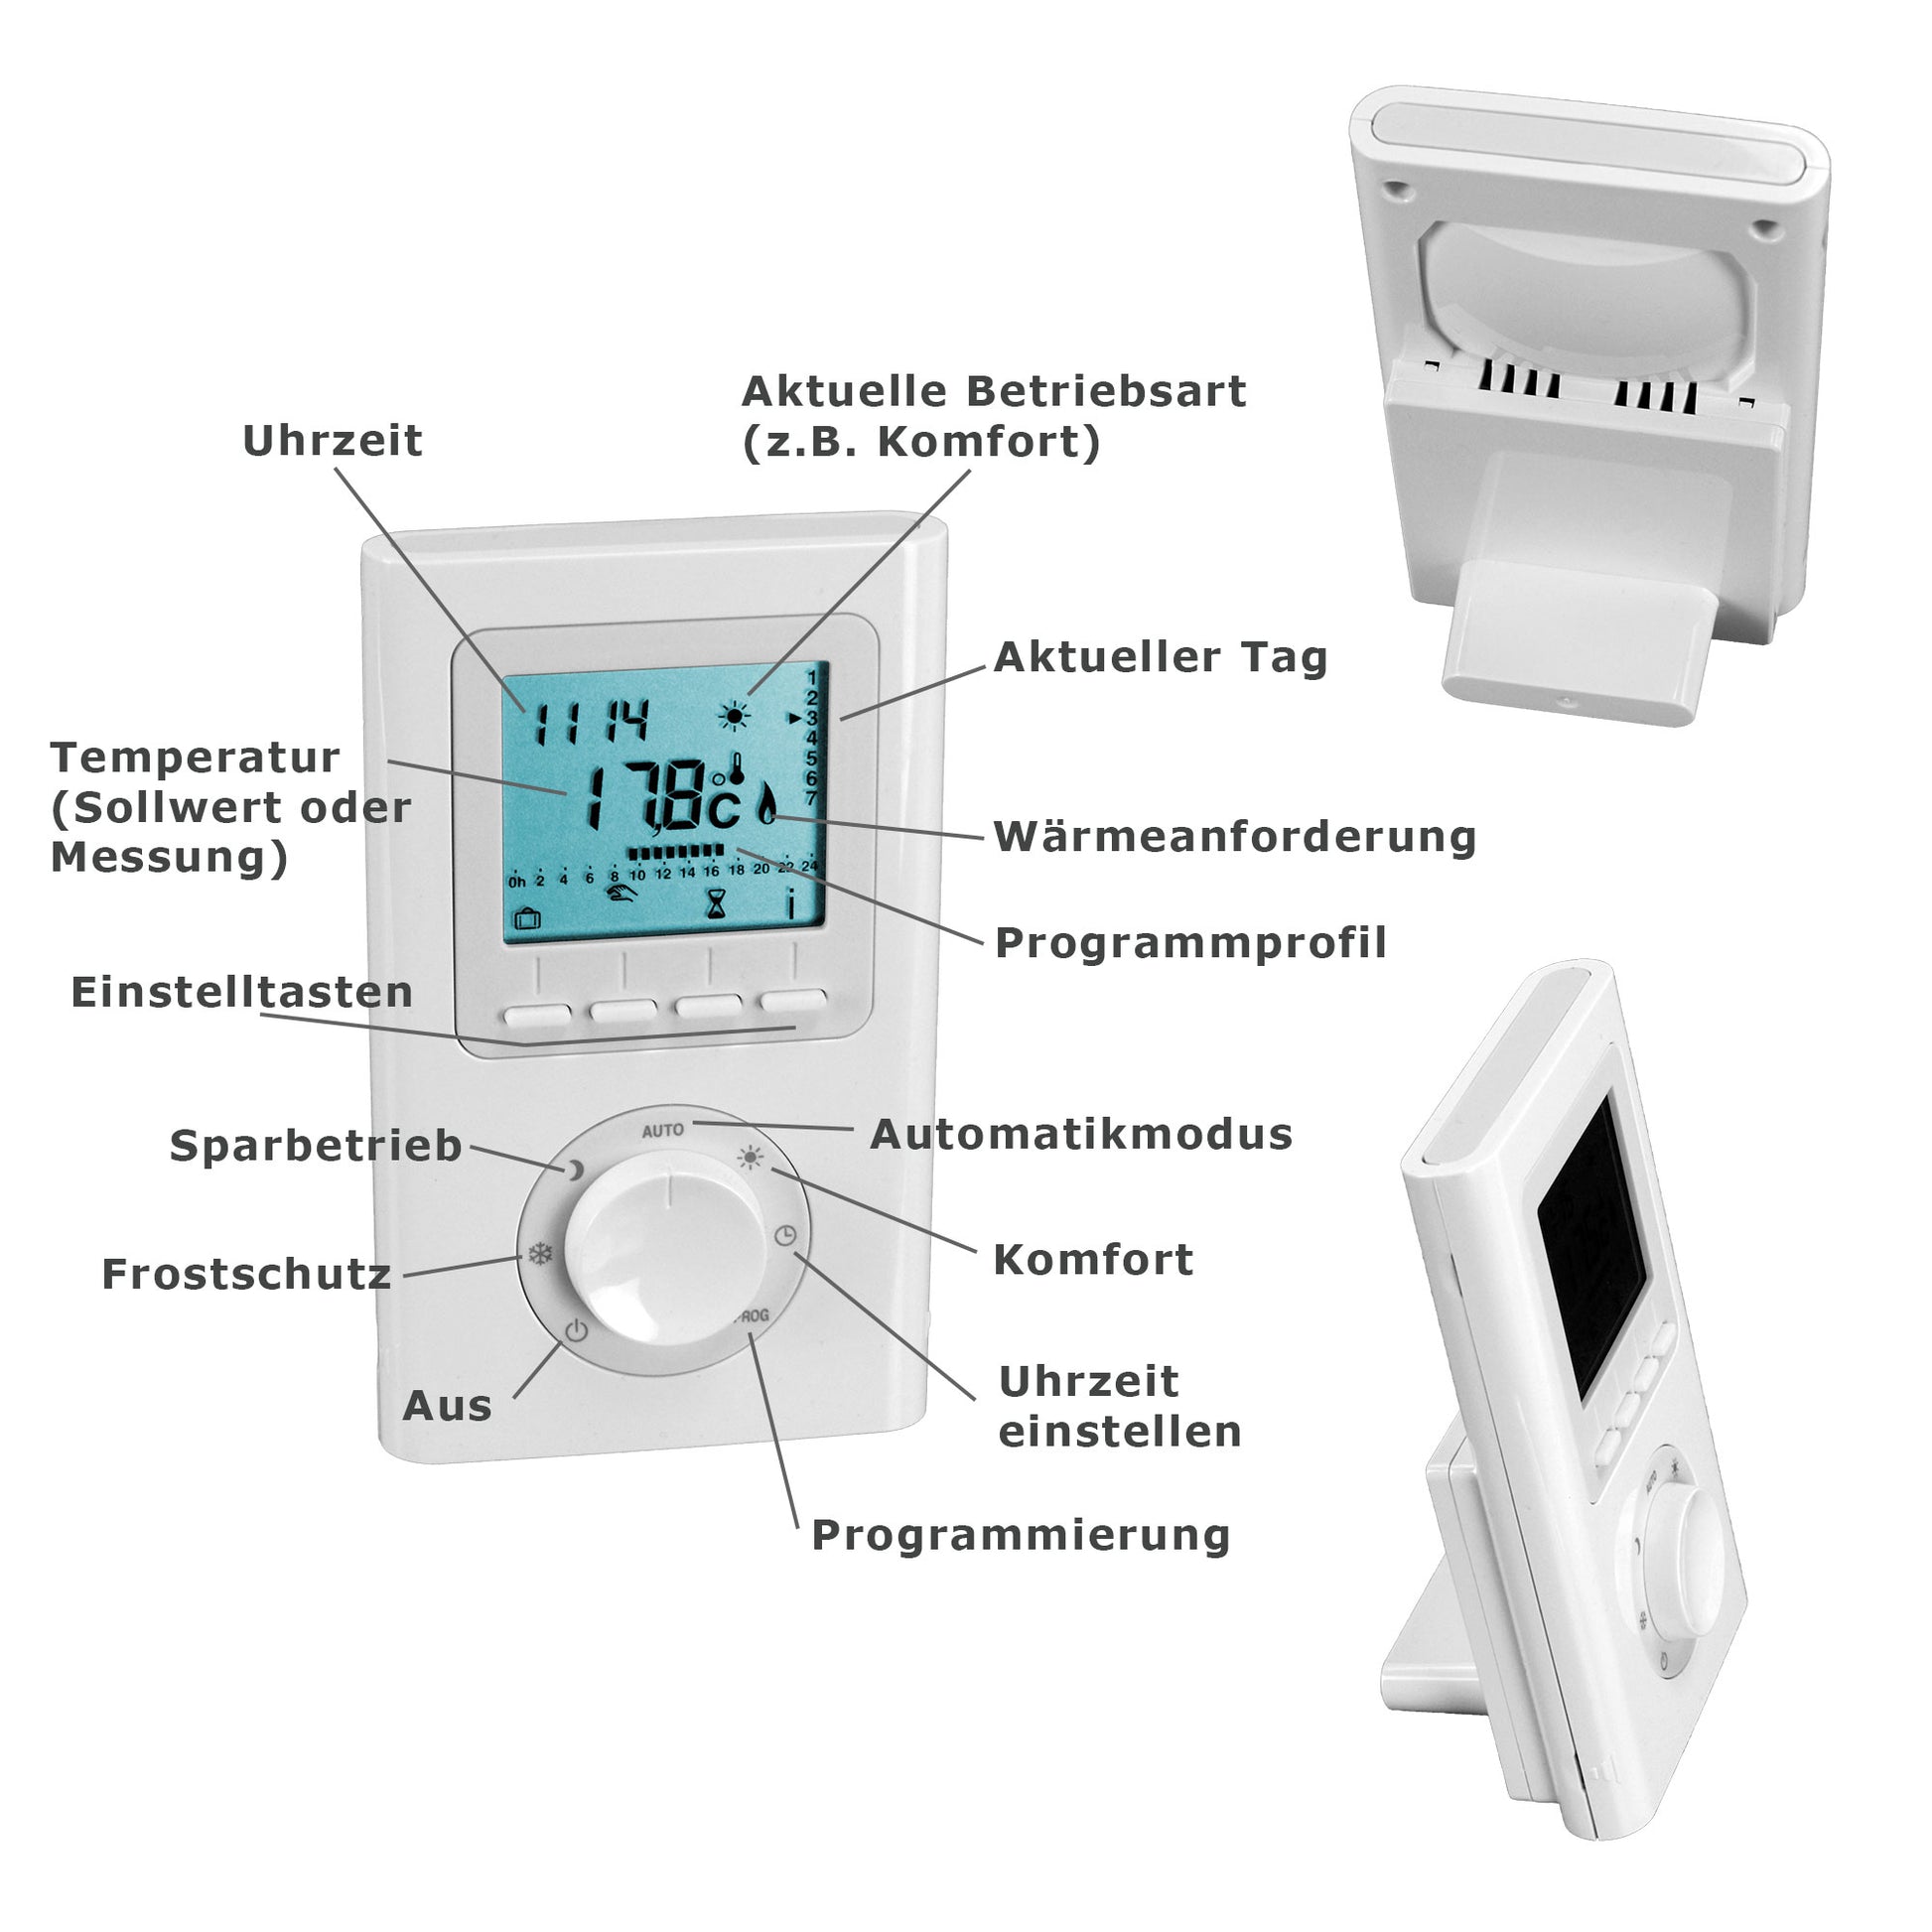 500 Watt elektrische Heizung mit Thermostat – attec24